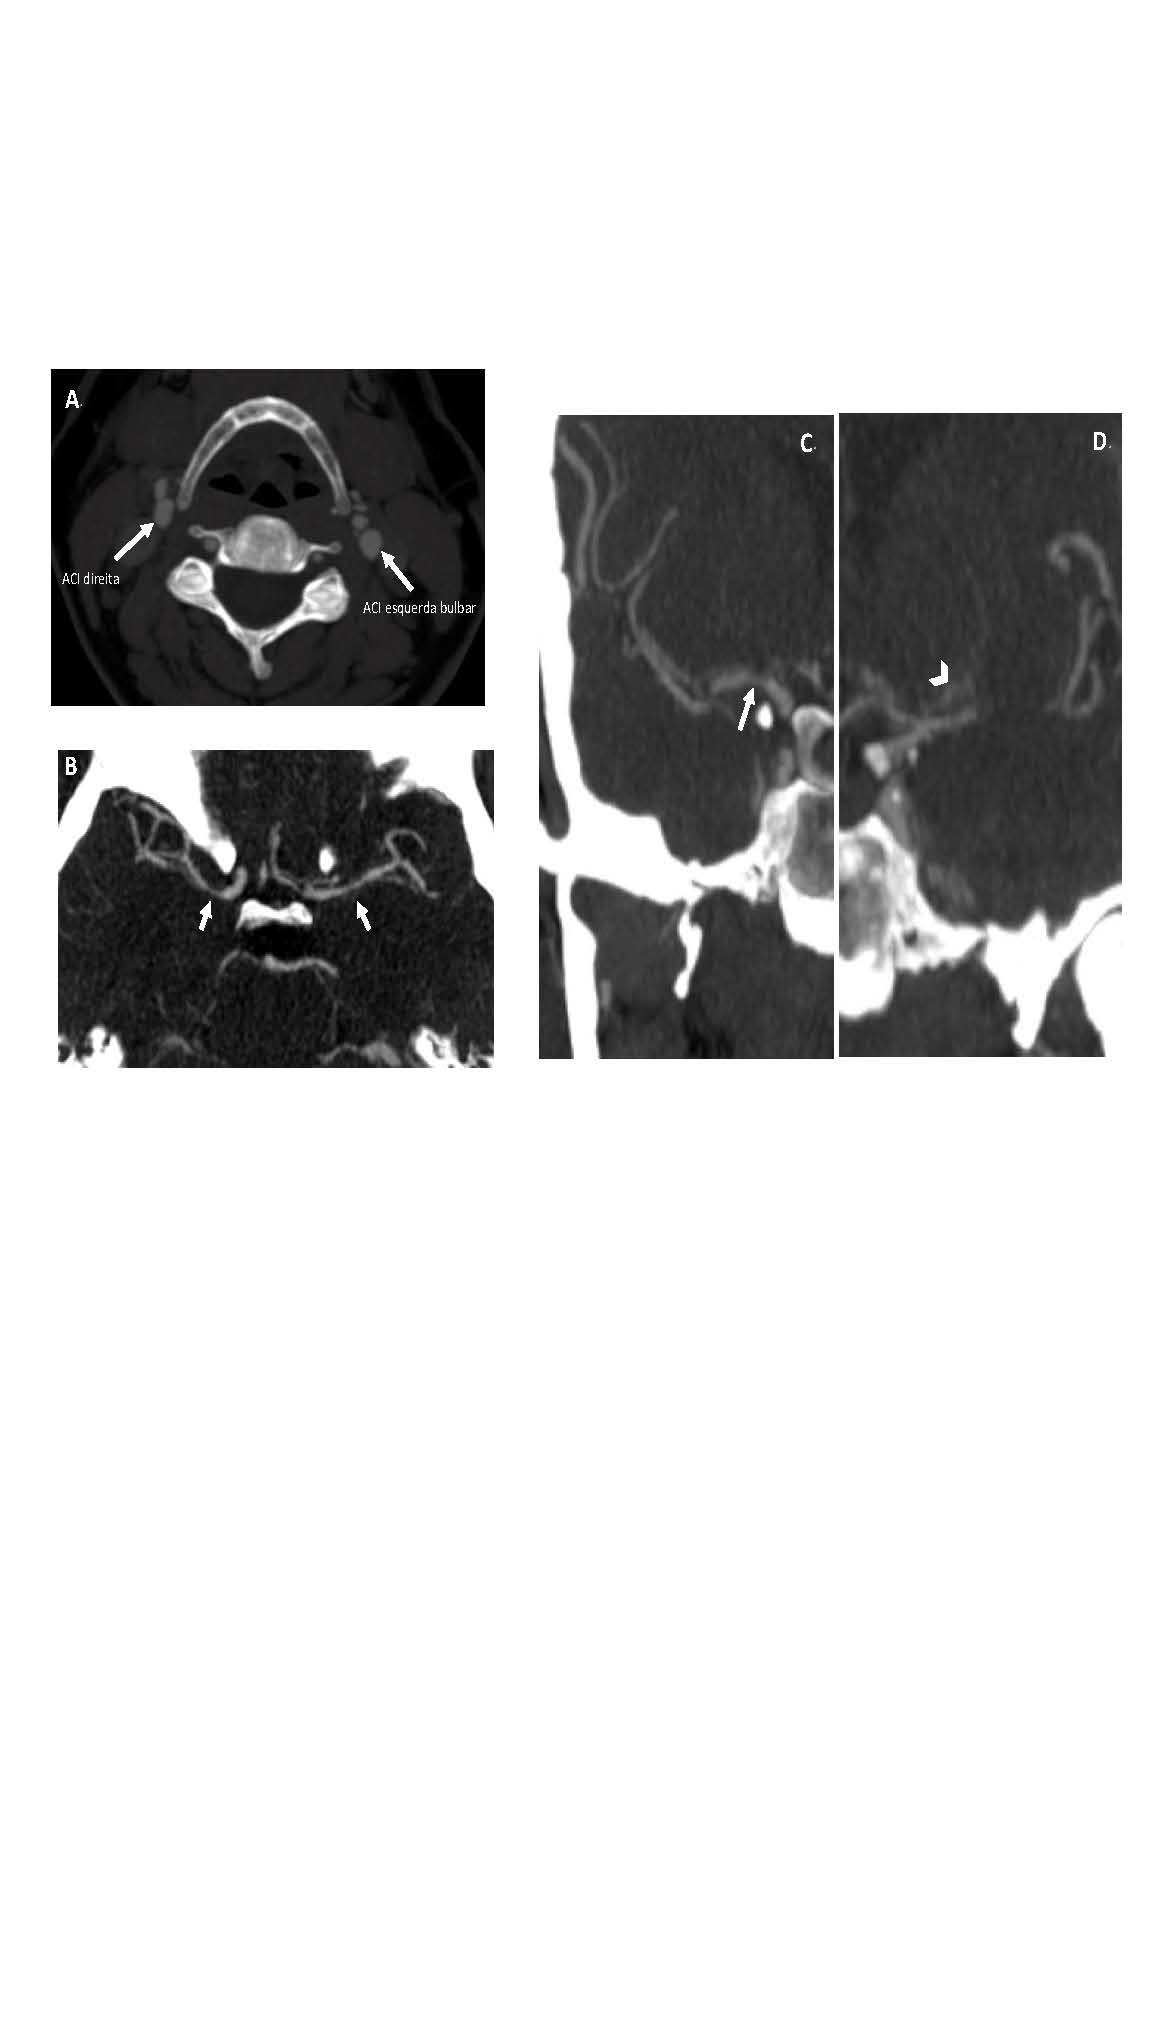 Figura 1 - Angio TC CE: A (Plano axial) – bifurcações carotídeas sem placas de ateroma ou sinais de dissecção;B (Plano axial) - Estenose dos segmentos M1 das artérias cerebrais médias;C (Plano coronal) - Estenose da origem dos segmentos M1 (      ) e A1 (      ) das artérias cerebrais média e anterior, respectiva-mente.D (Plano coronal) – À esquerda, hipertrofia das artérias lenticulo-estriadas (      ).ACBD